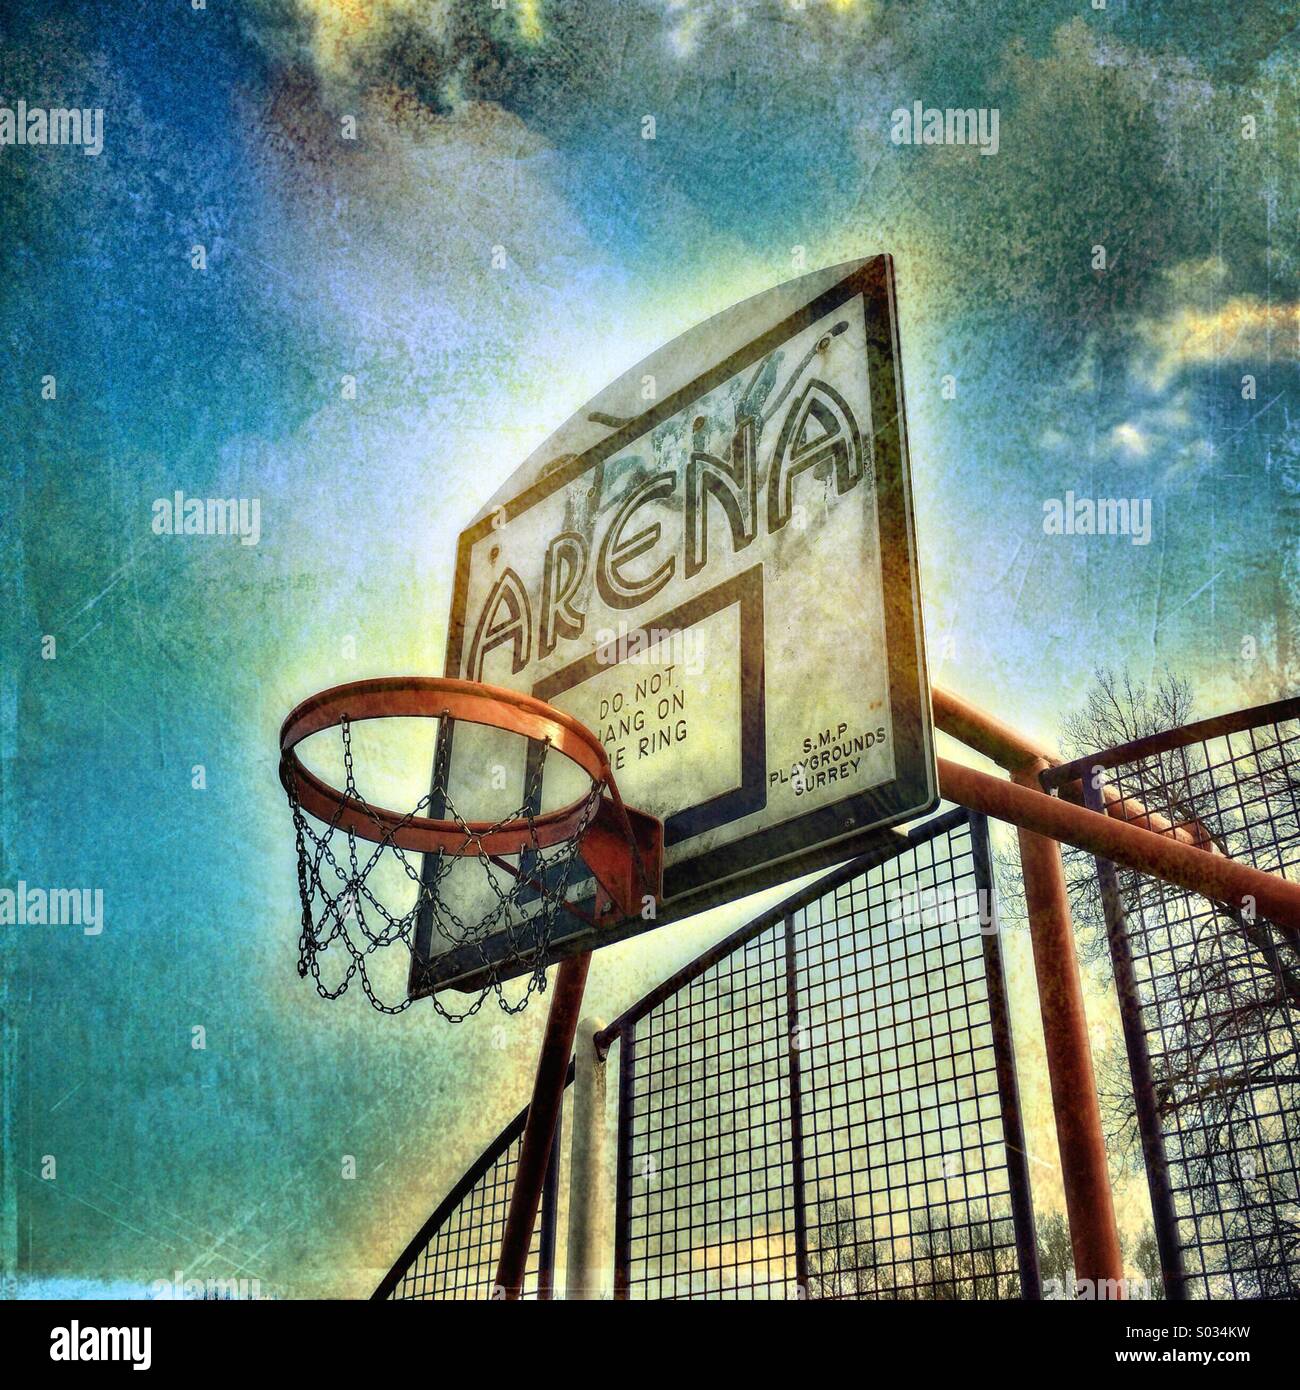 Basket ball hoop Stock Photo